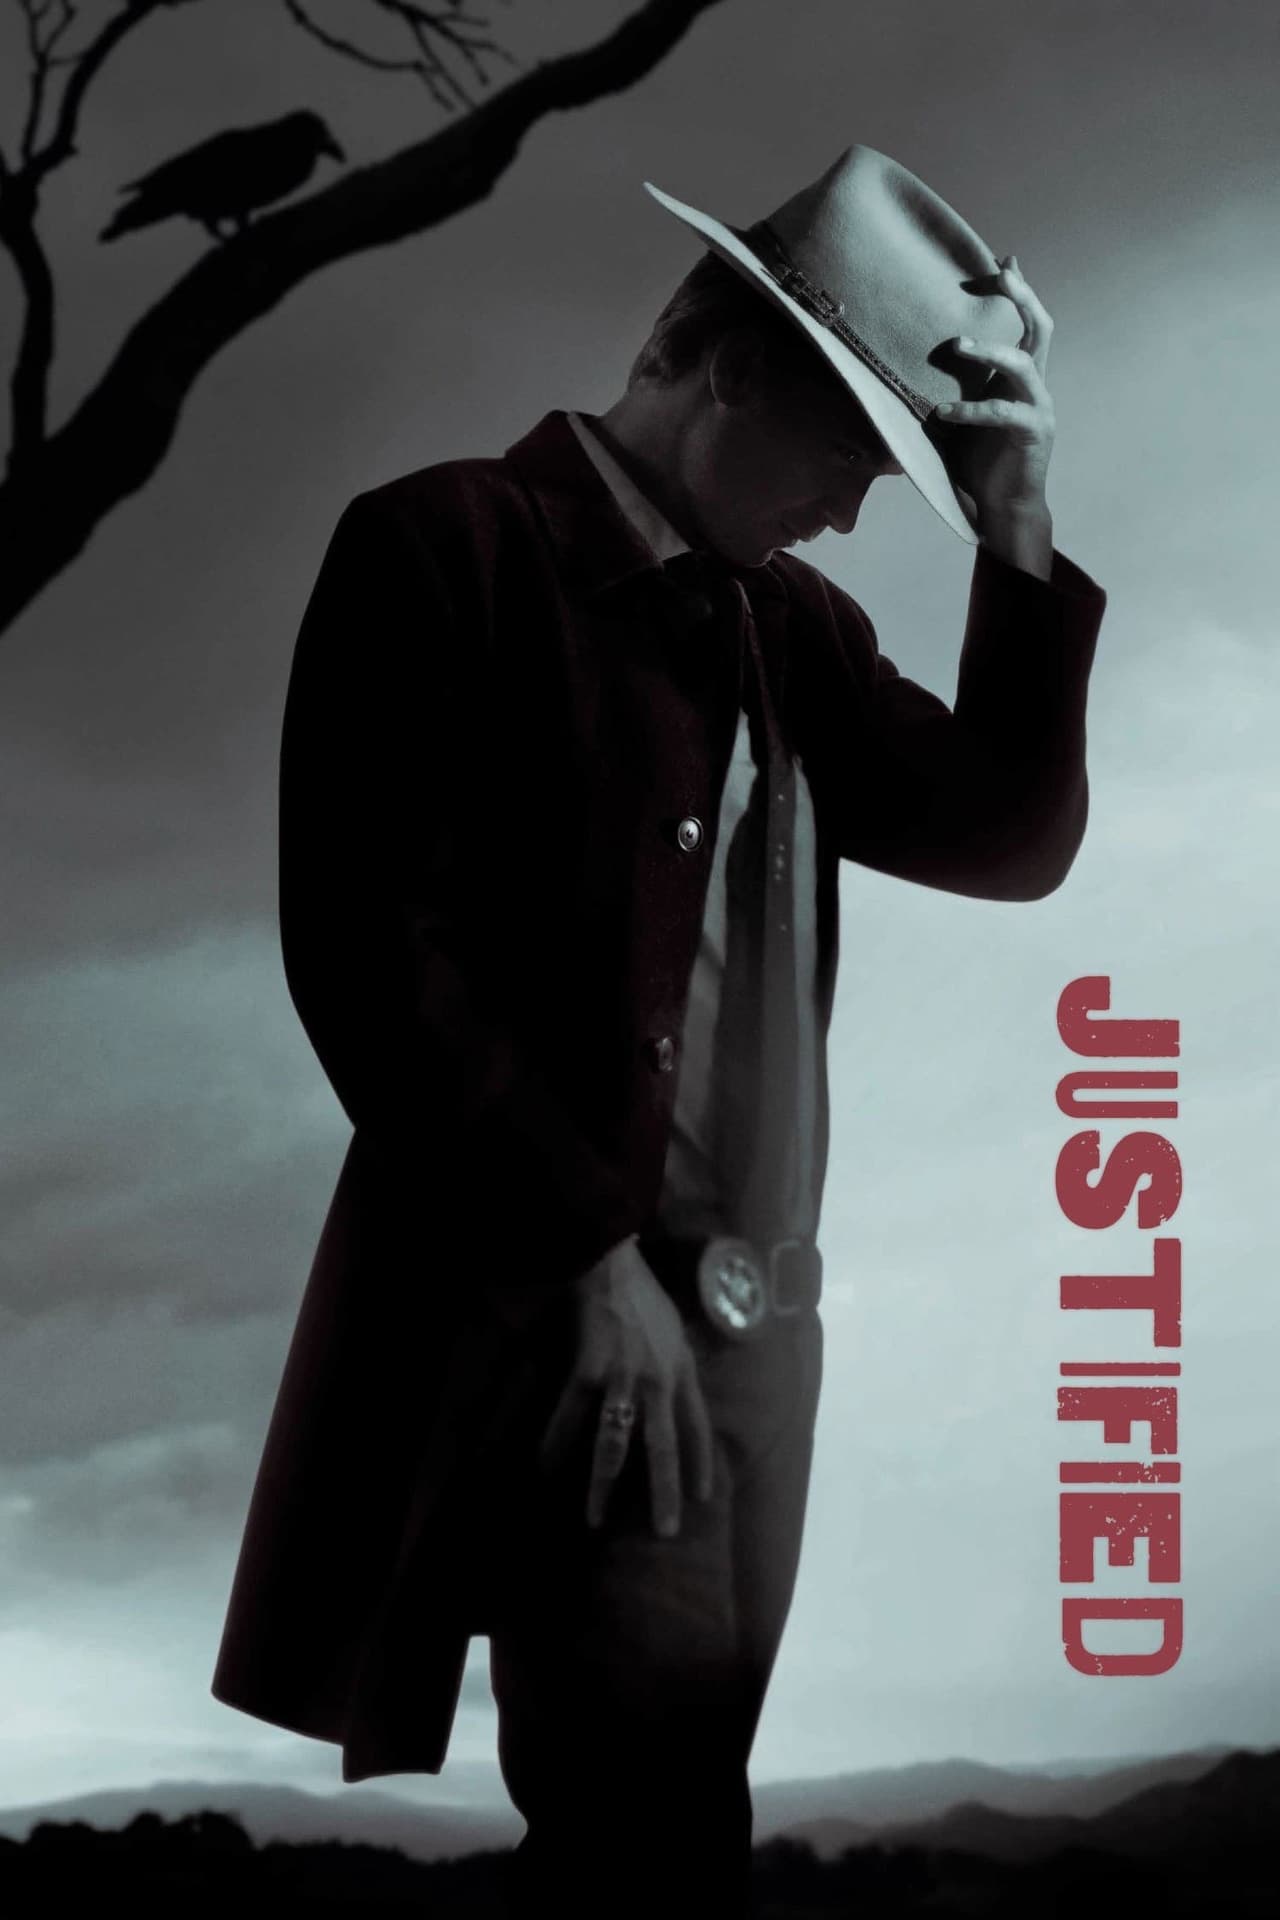 Justified (season 3)